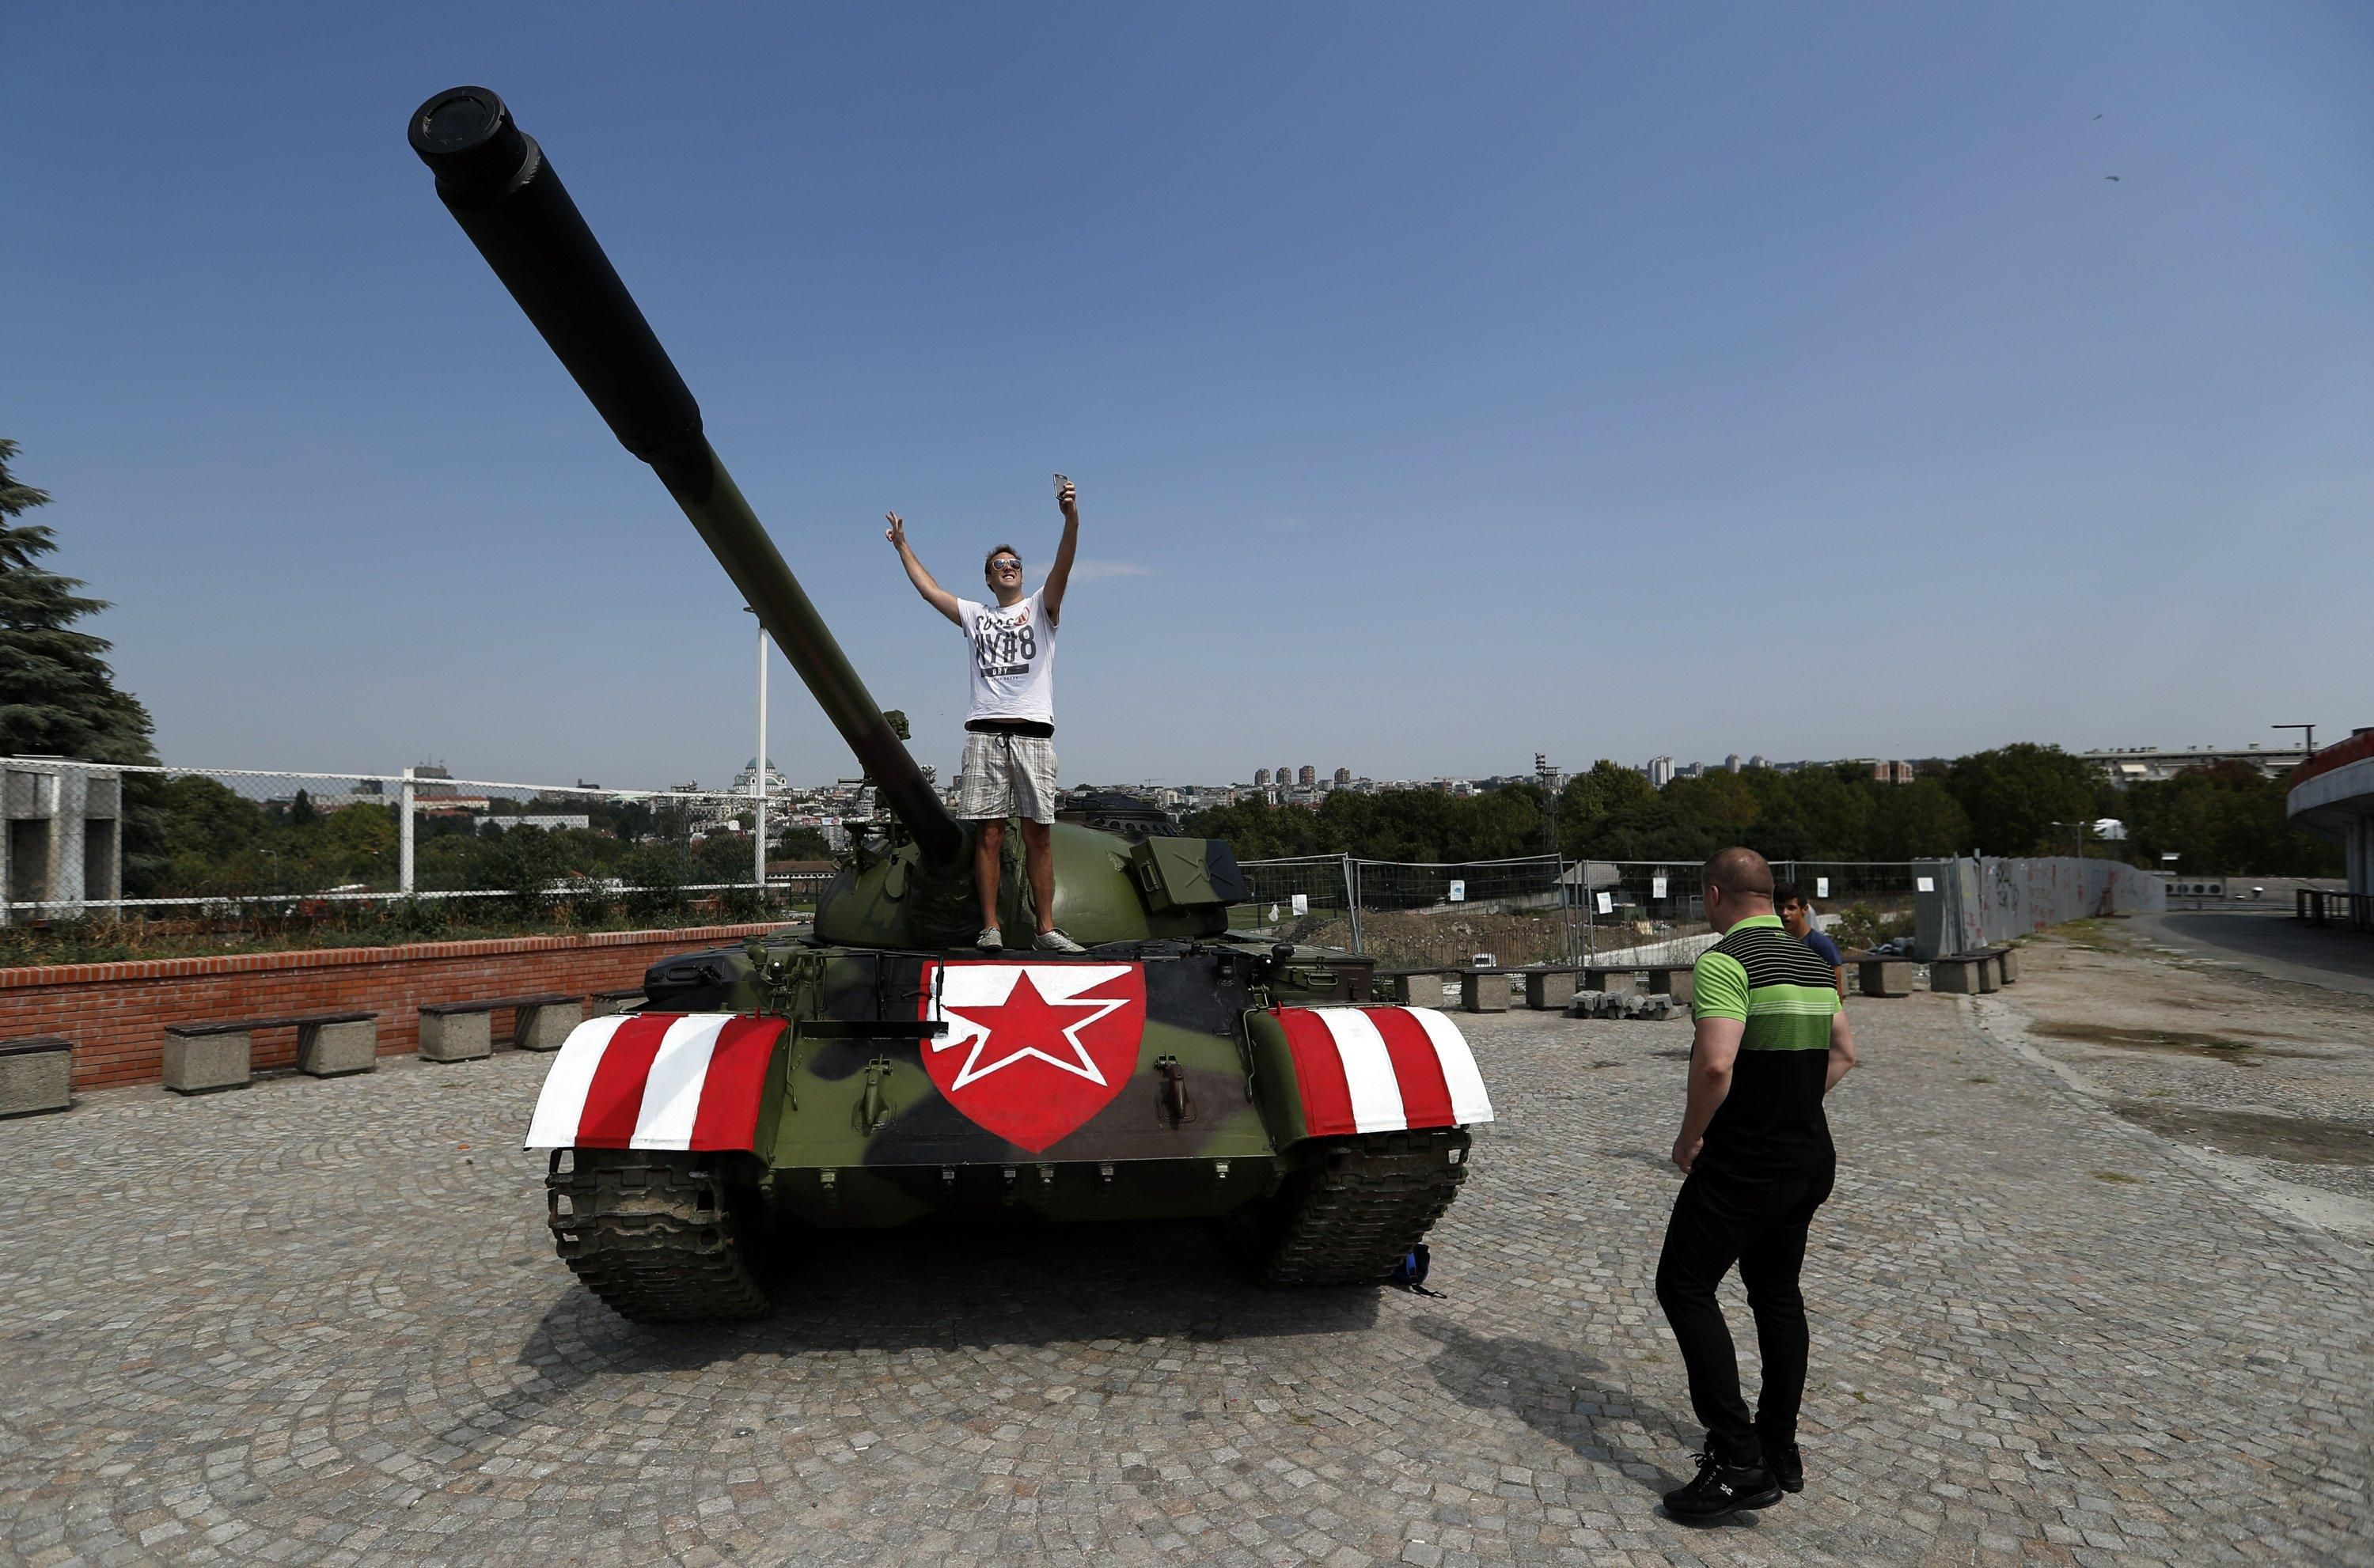 Сербские фанаты пригнали к стадиону советский танк перед матчем Лиги чемпионов: видео